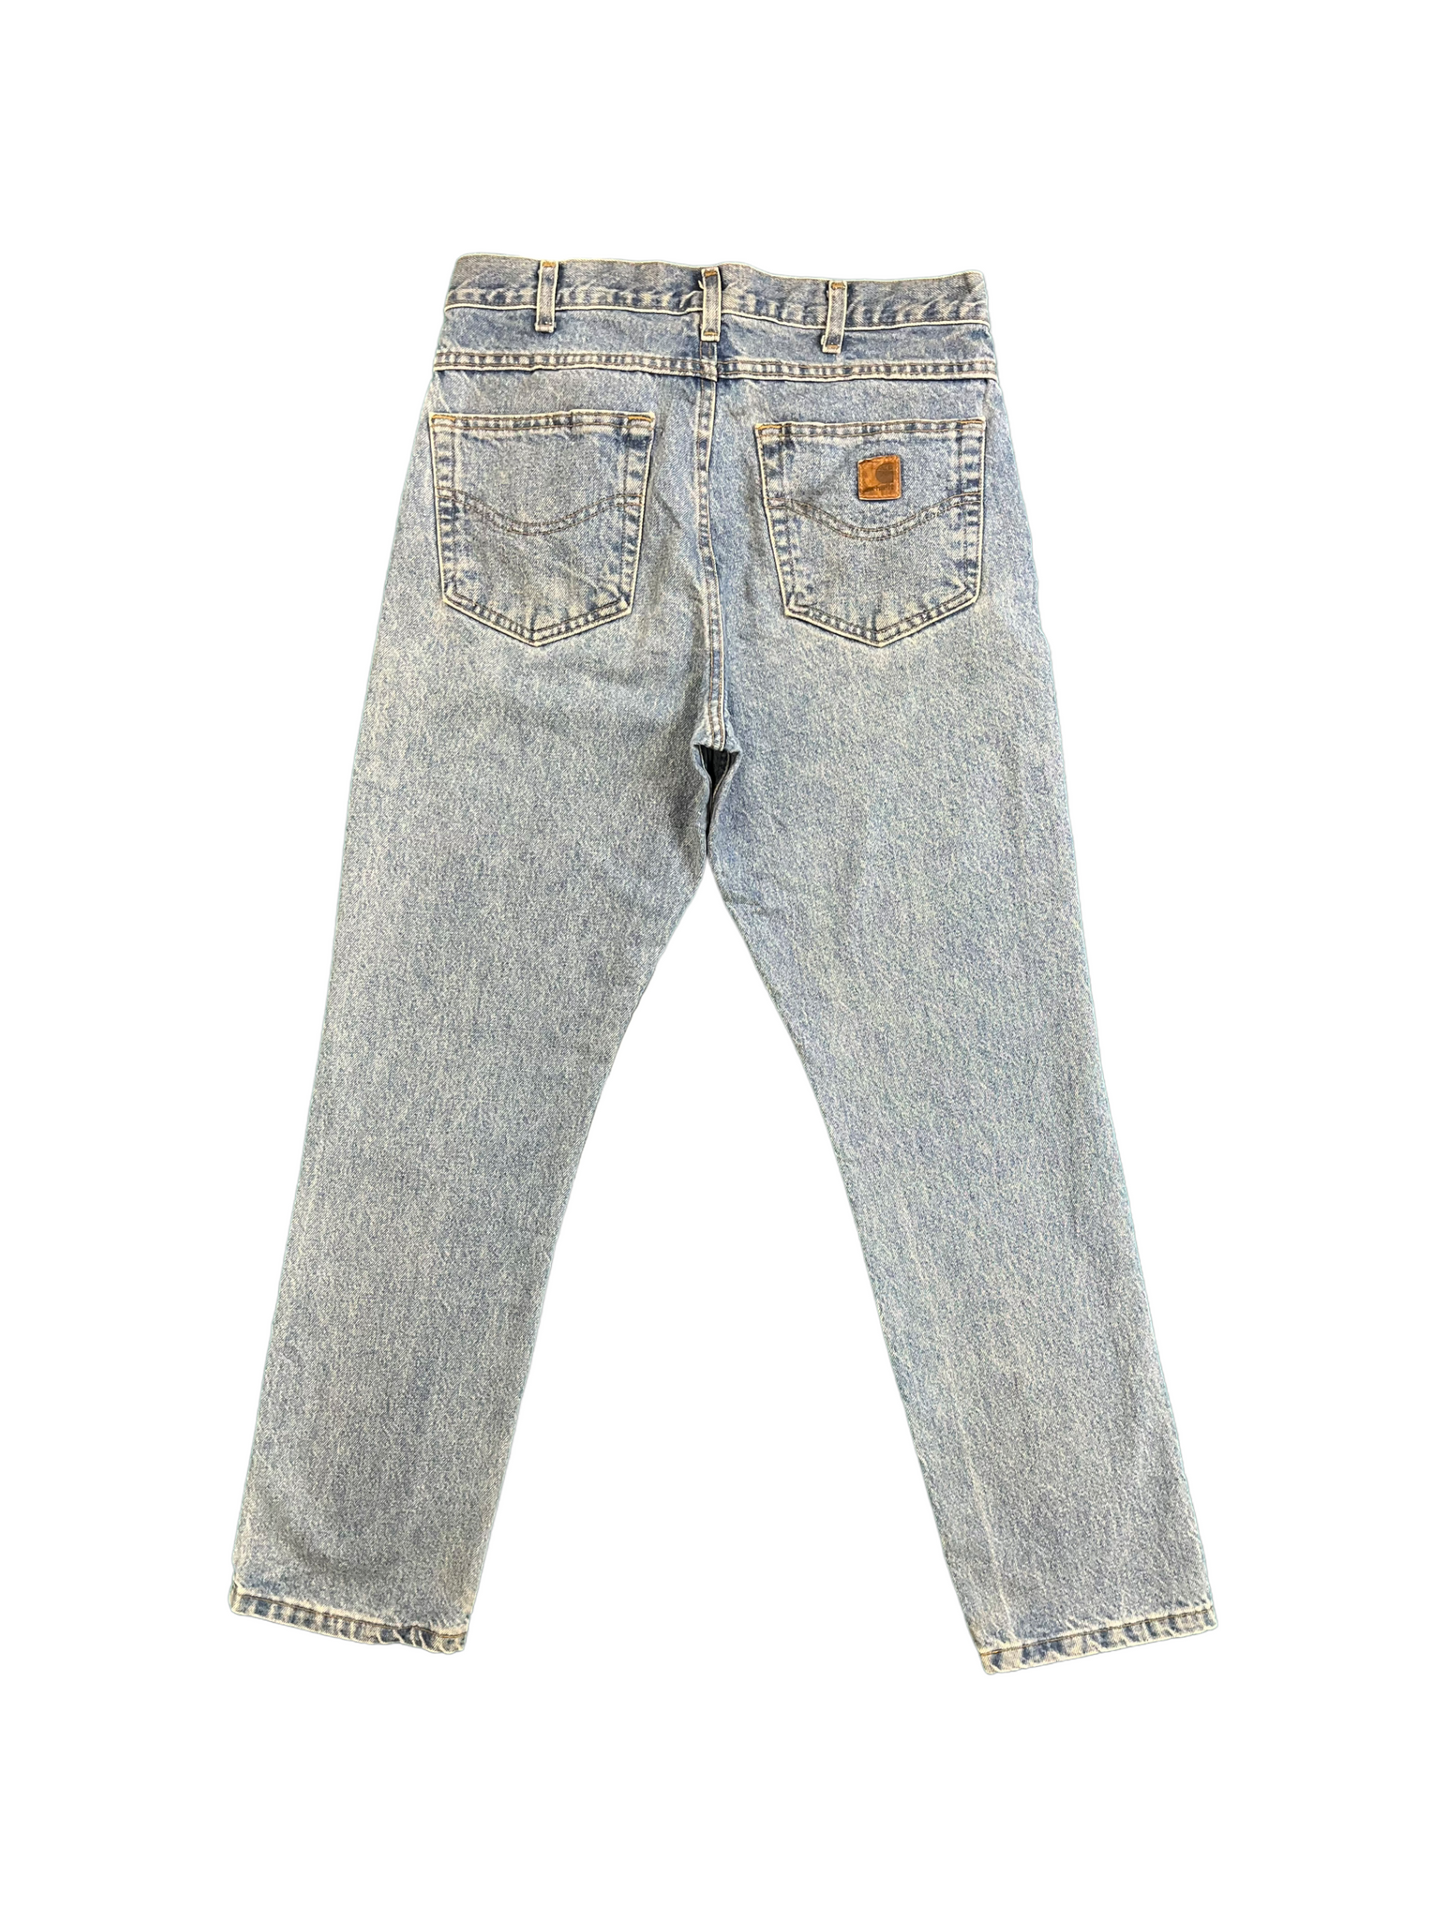 Mens Regular Fit Carhartt Jeans - Waist 36" Length 34"